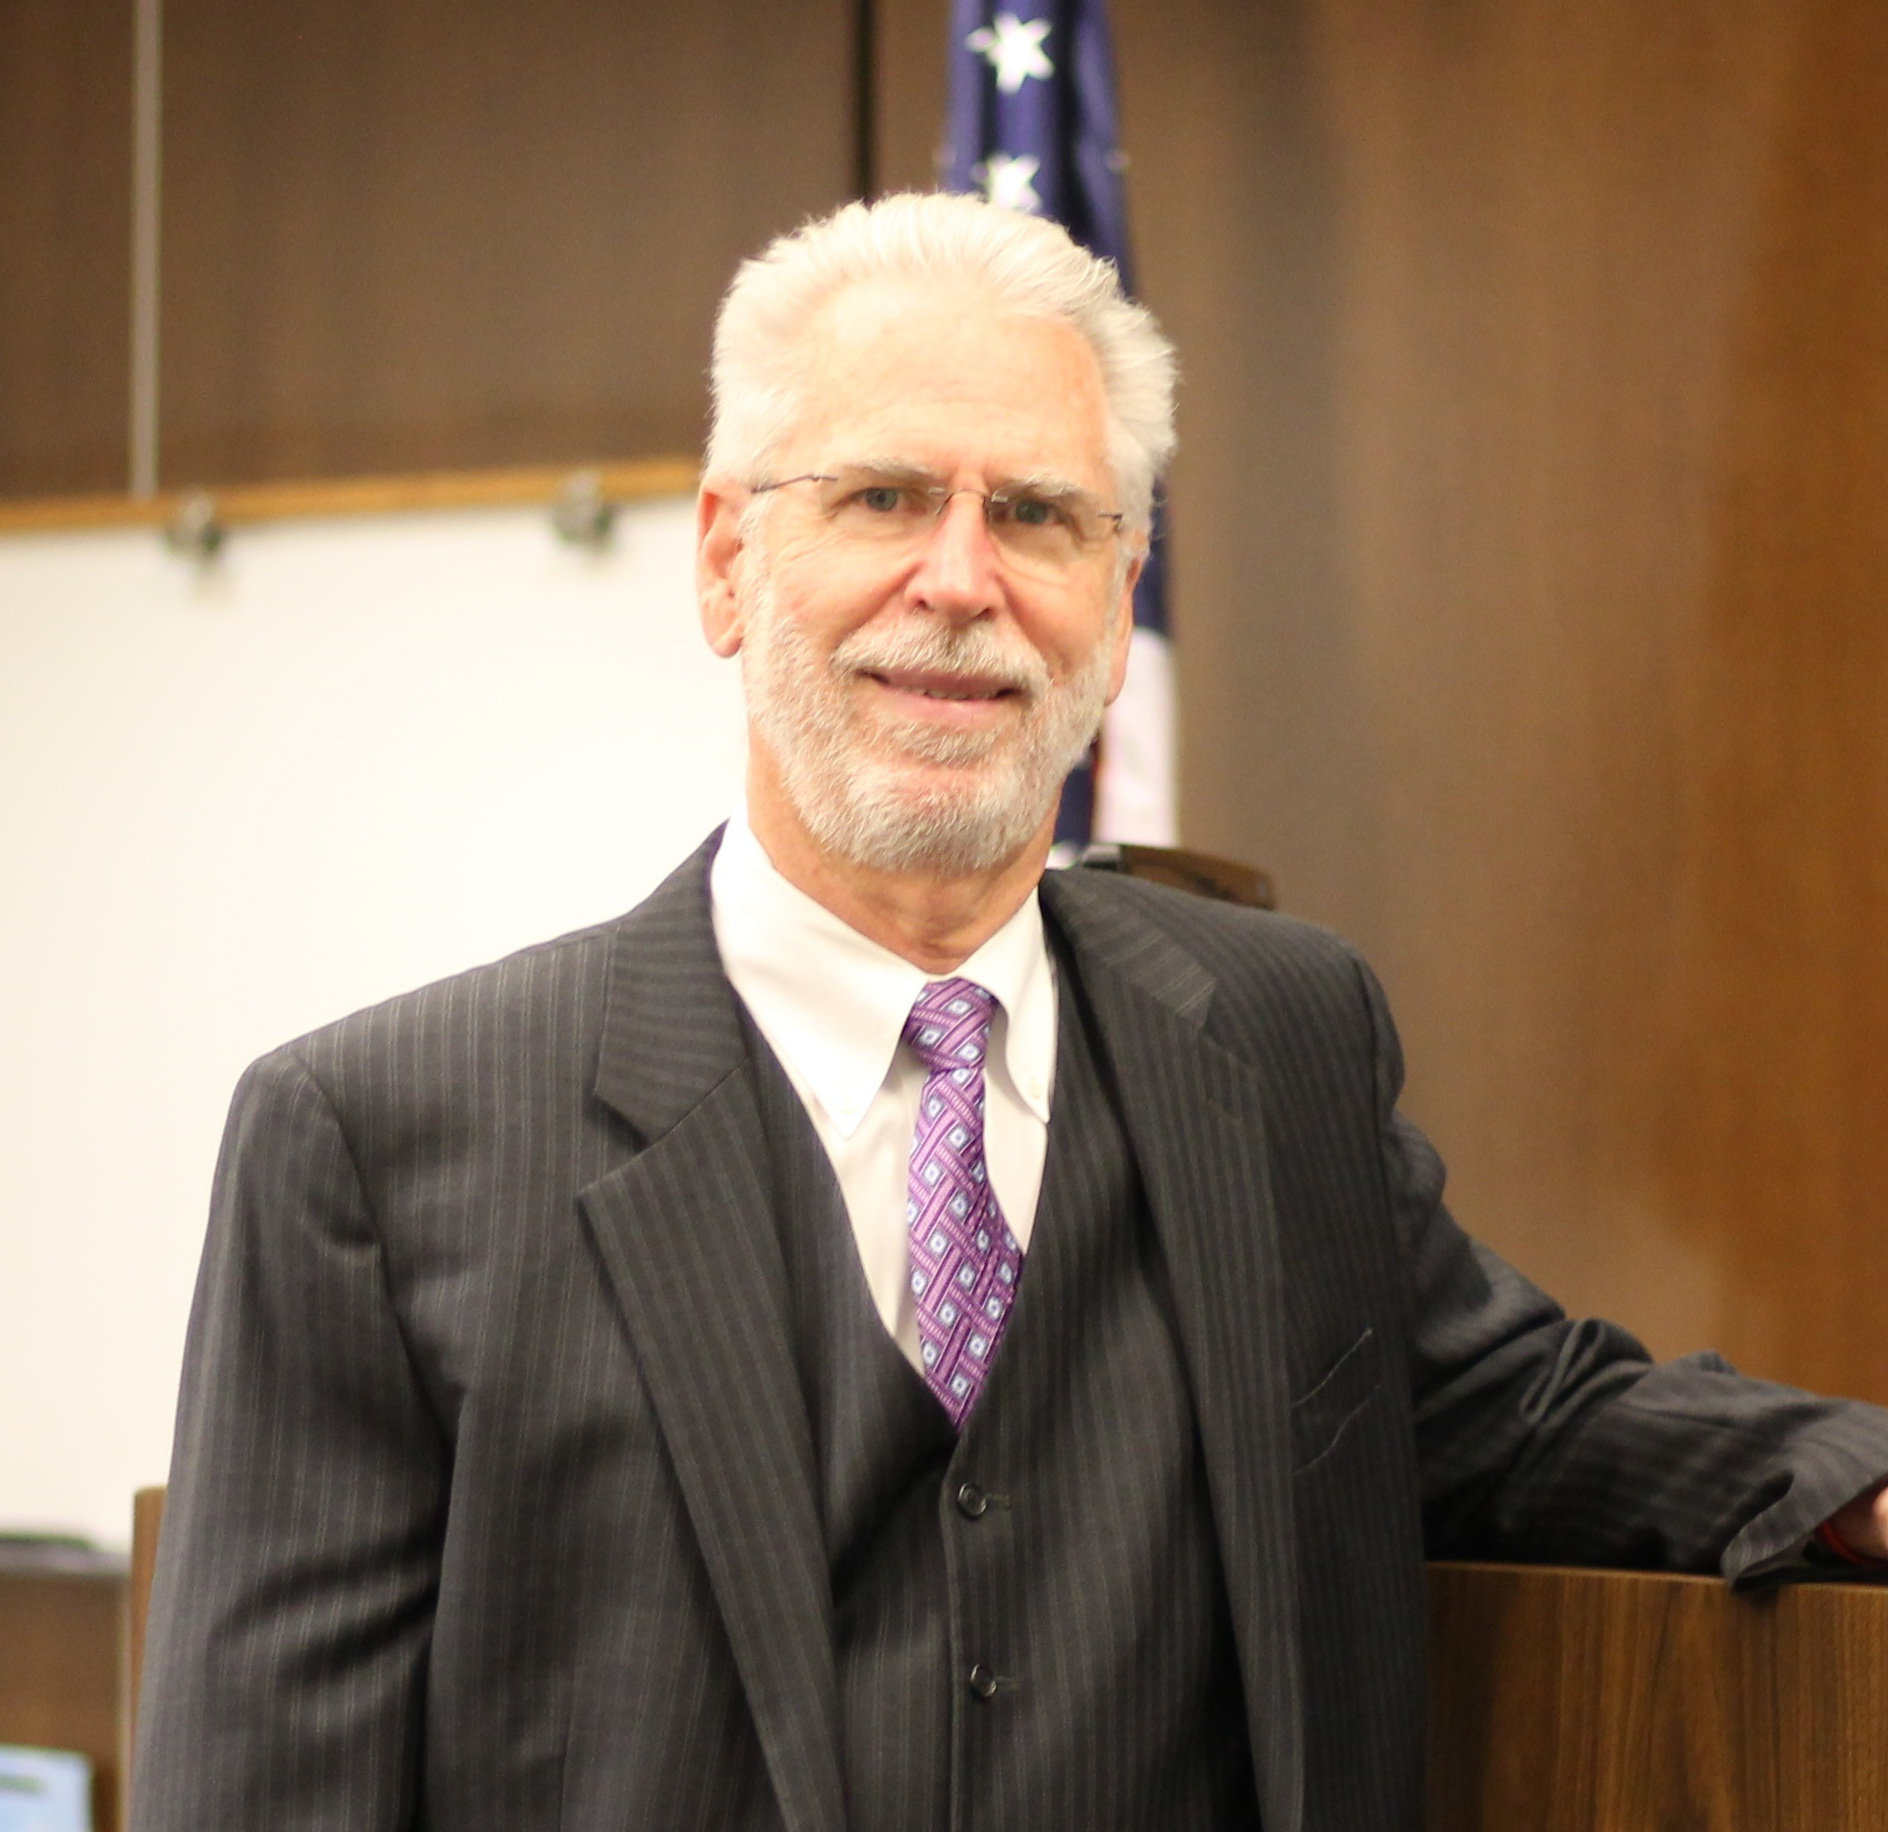 Hon. Judge David L. Belz